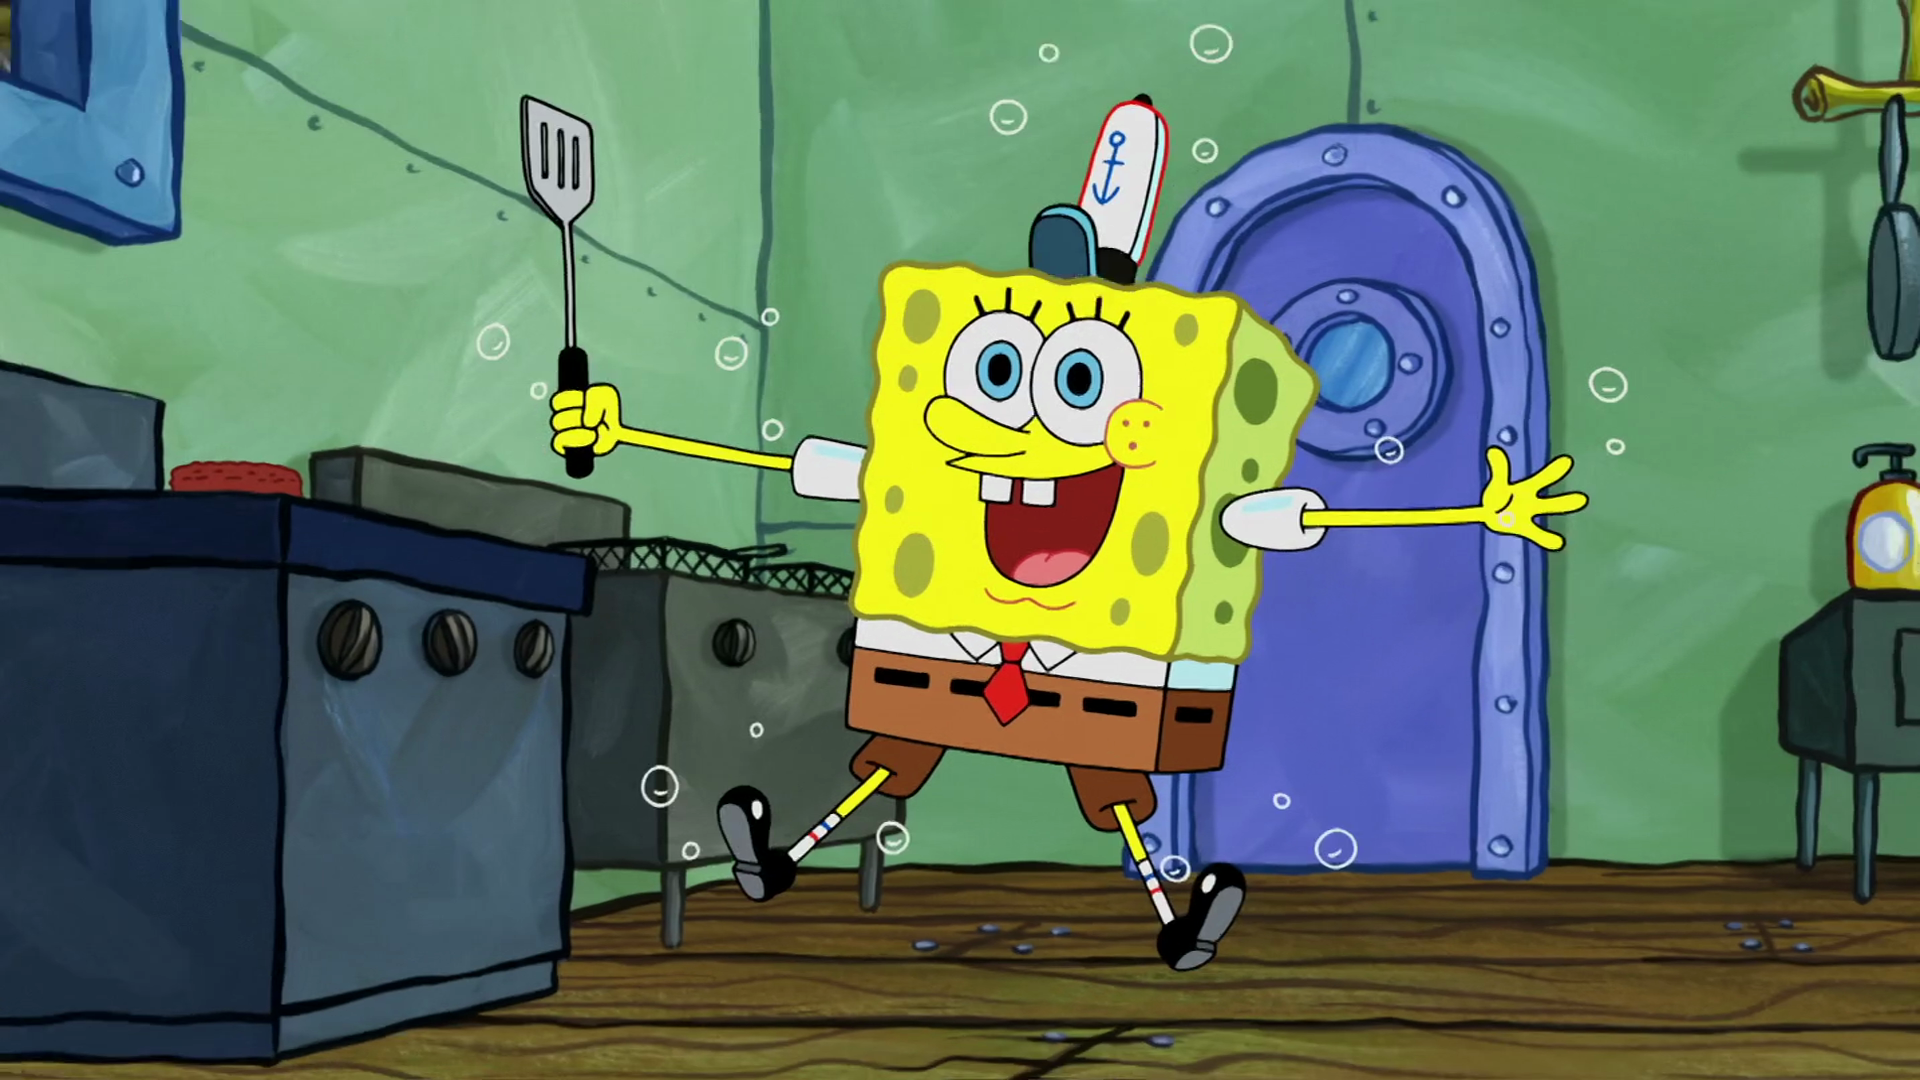 Spongebob tango. Гниль фрикаккасэ"губка Боб квадратные штаны". Губка Боб с лопаточкой.